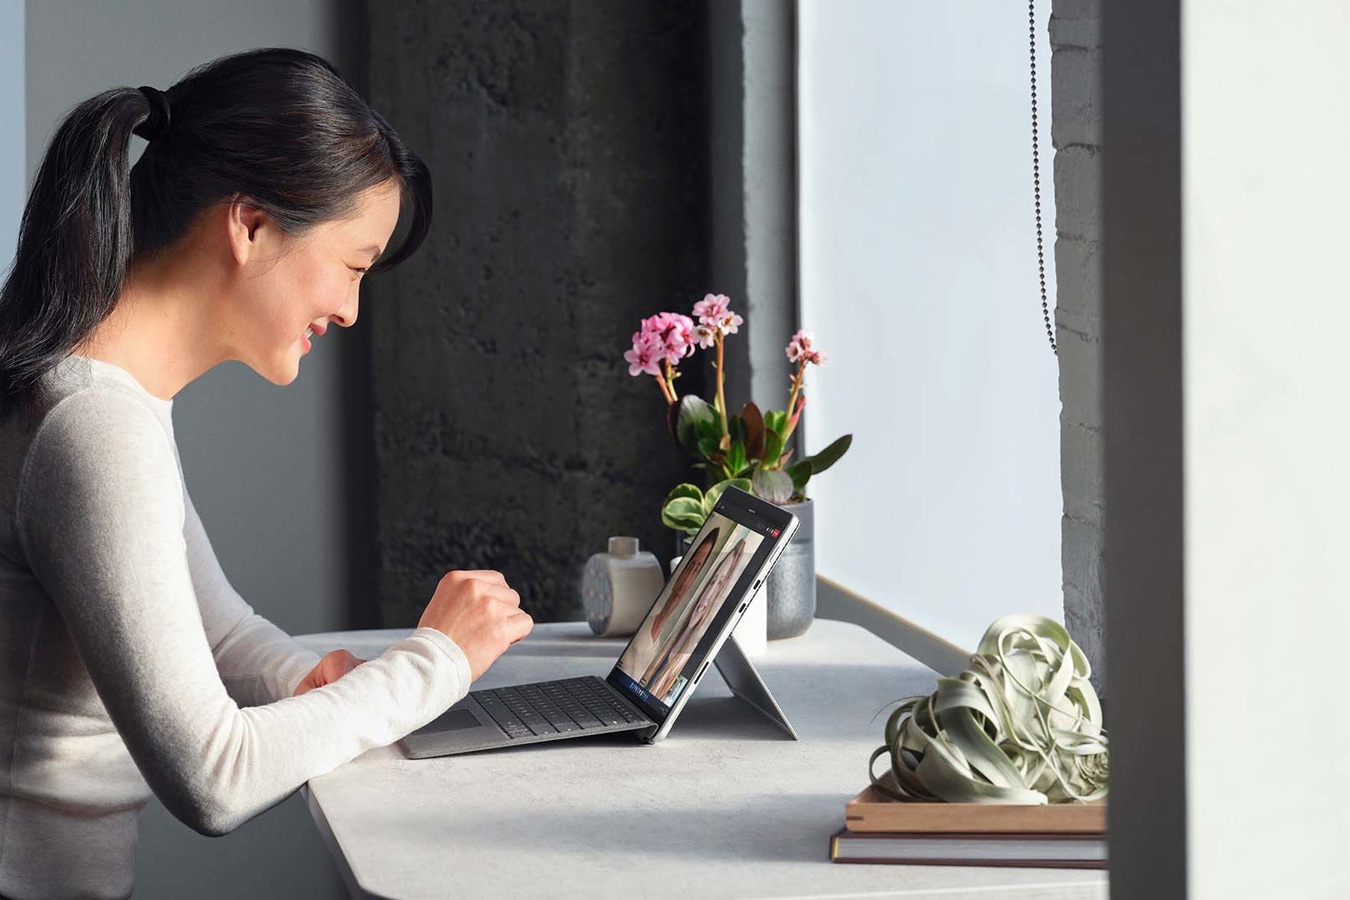 有人在遠端工作環境中，從 Surface Pro 8 裝置接聽 Microsoft Teams 通話